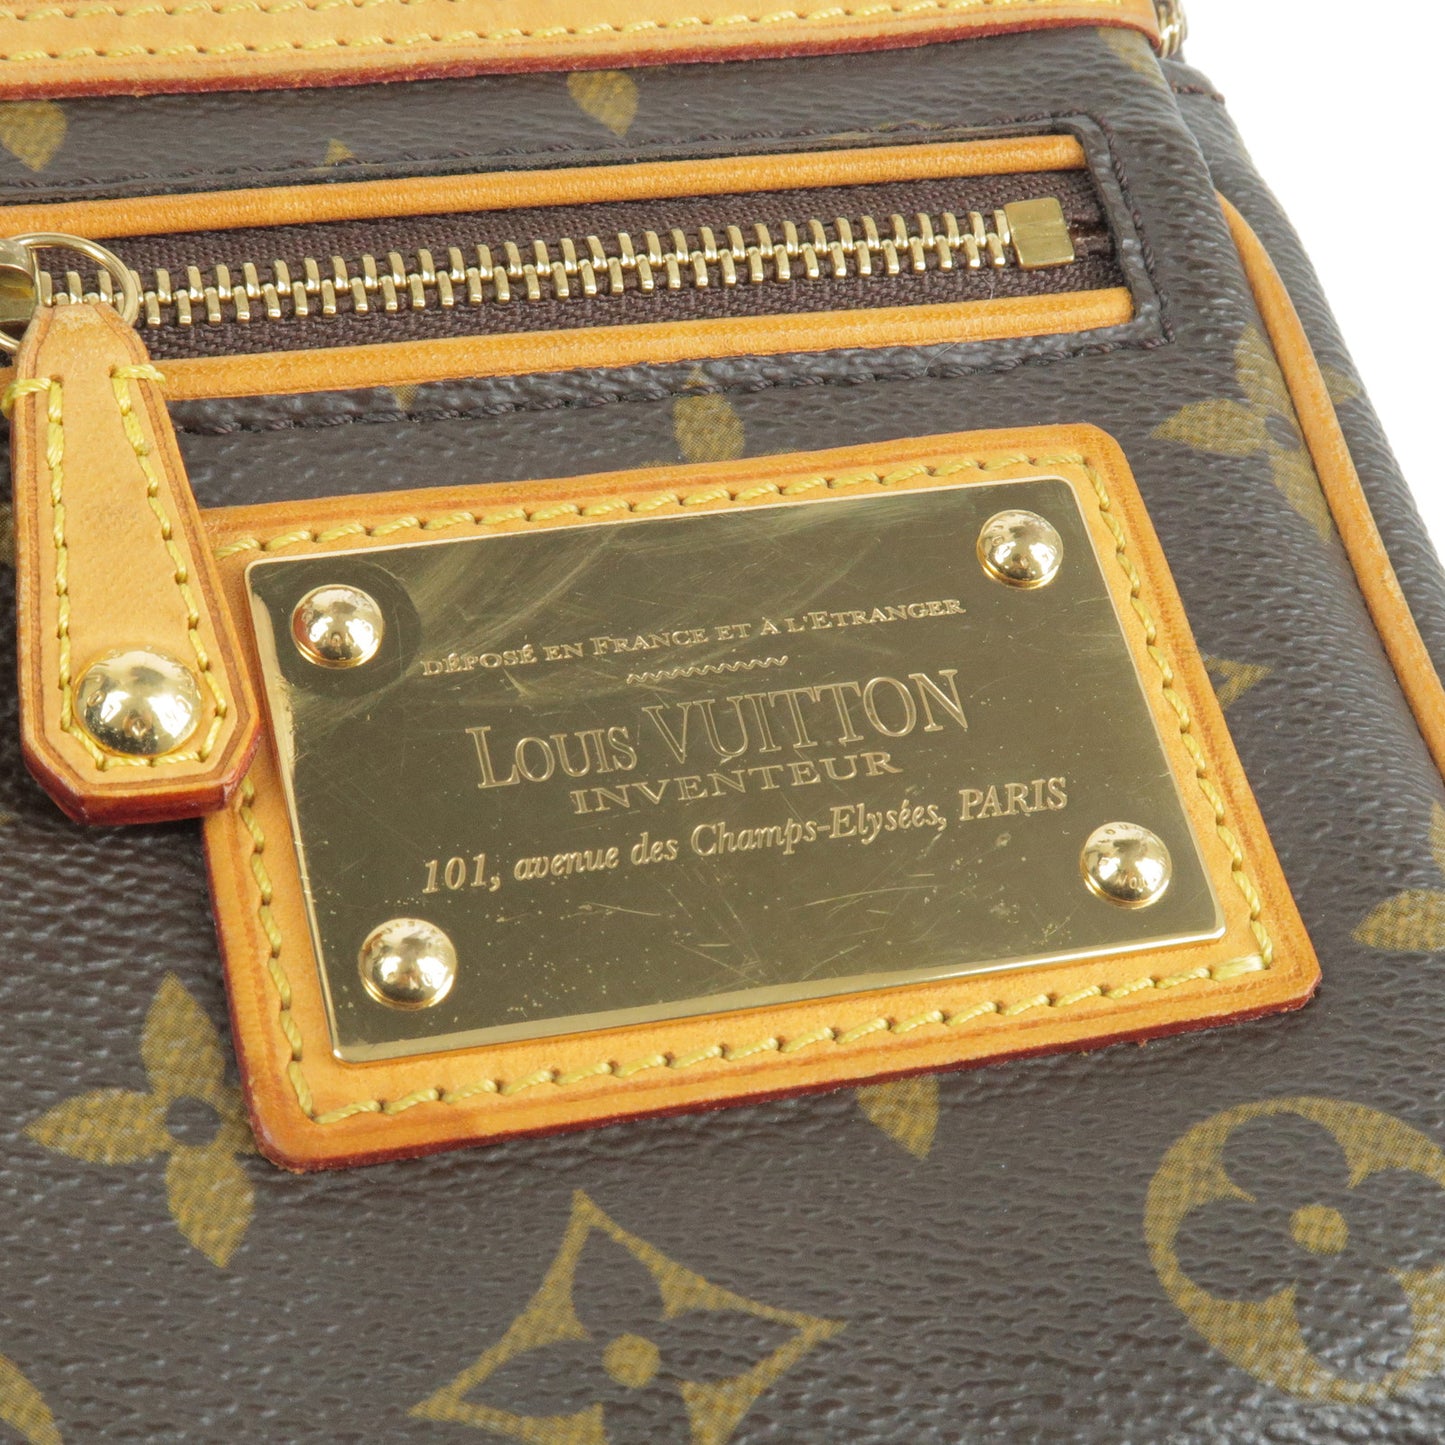 LOUIS VUITTON POCHETTE ACCESSOIRES HAND BAG MONOGRAM RIVET M40141 CA00 –  brand-jfa